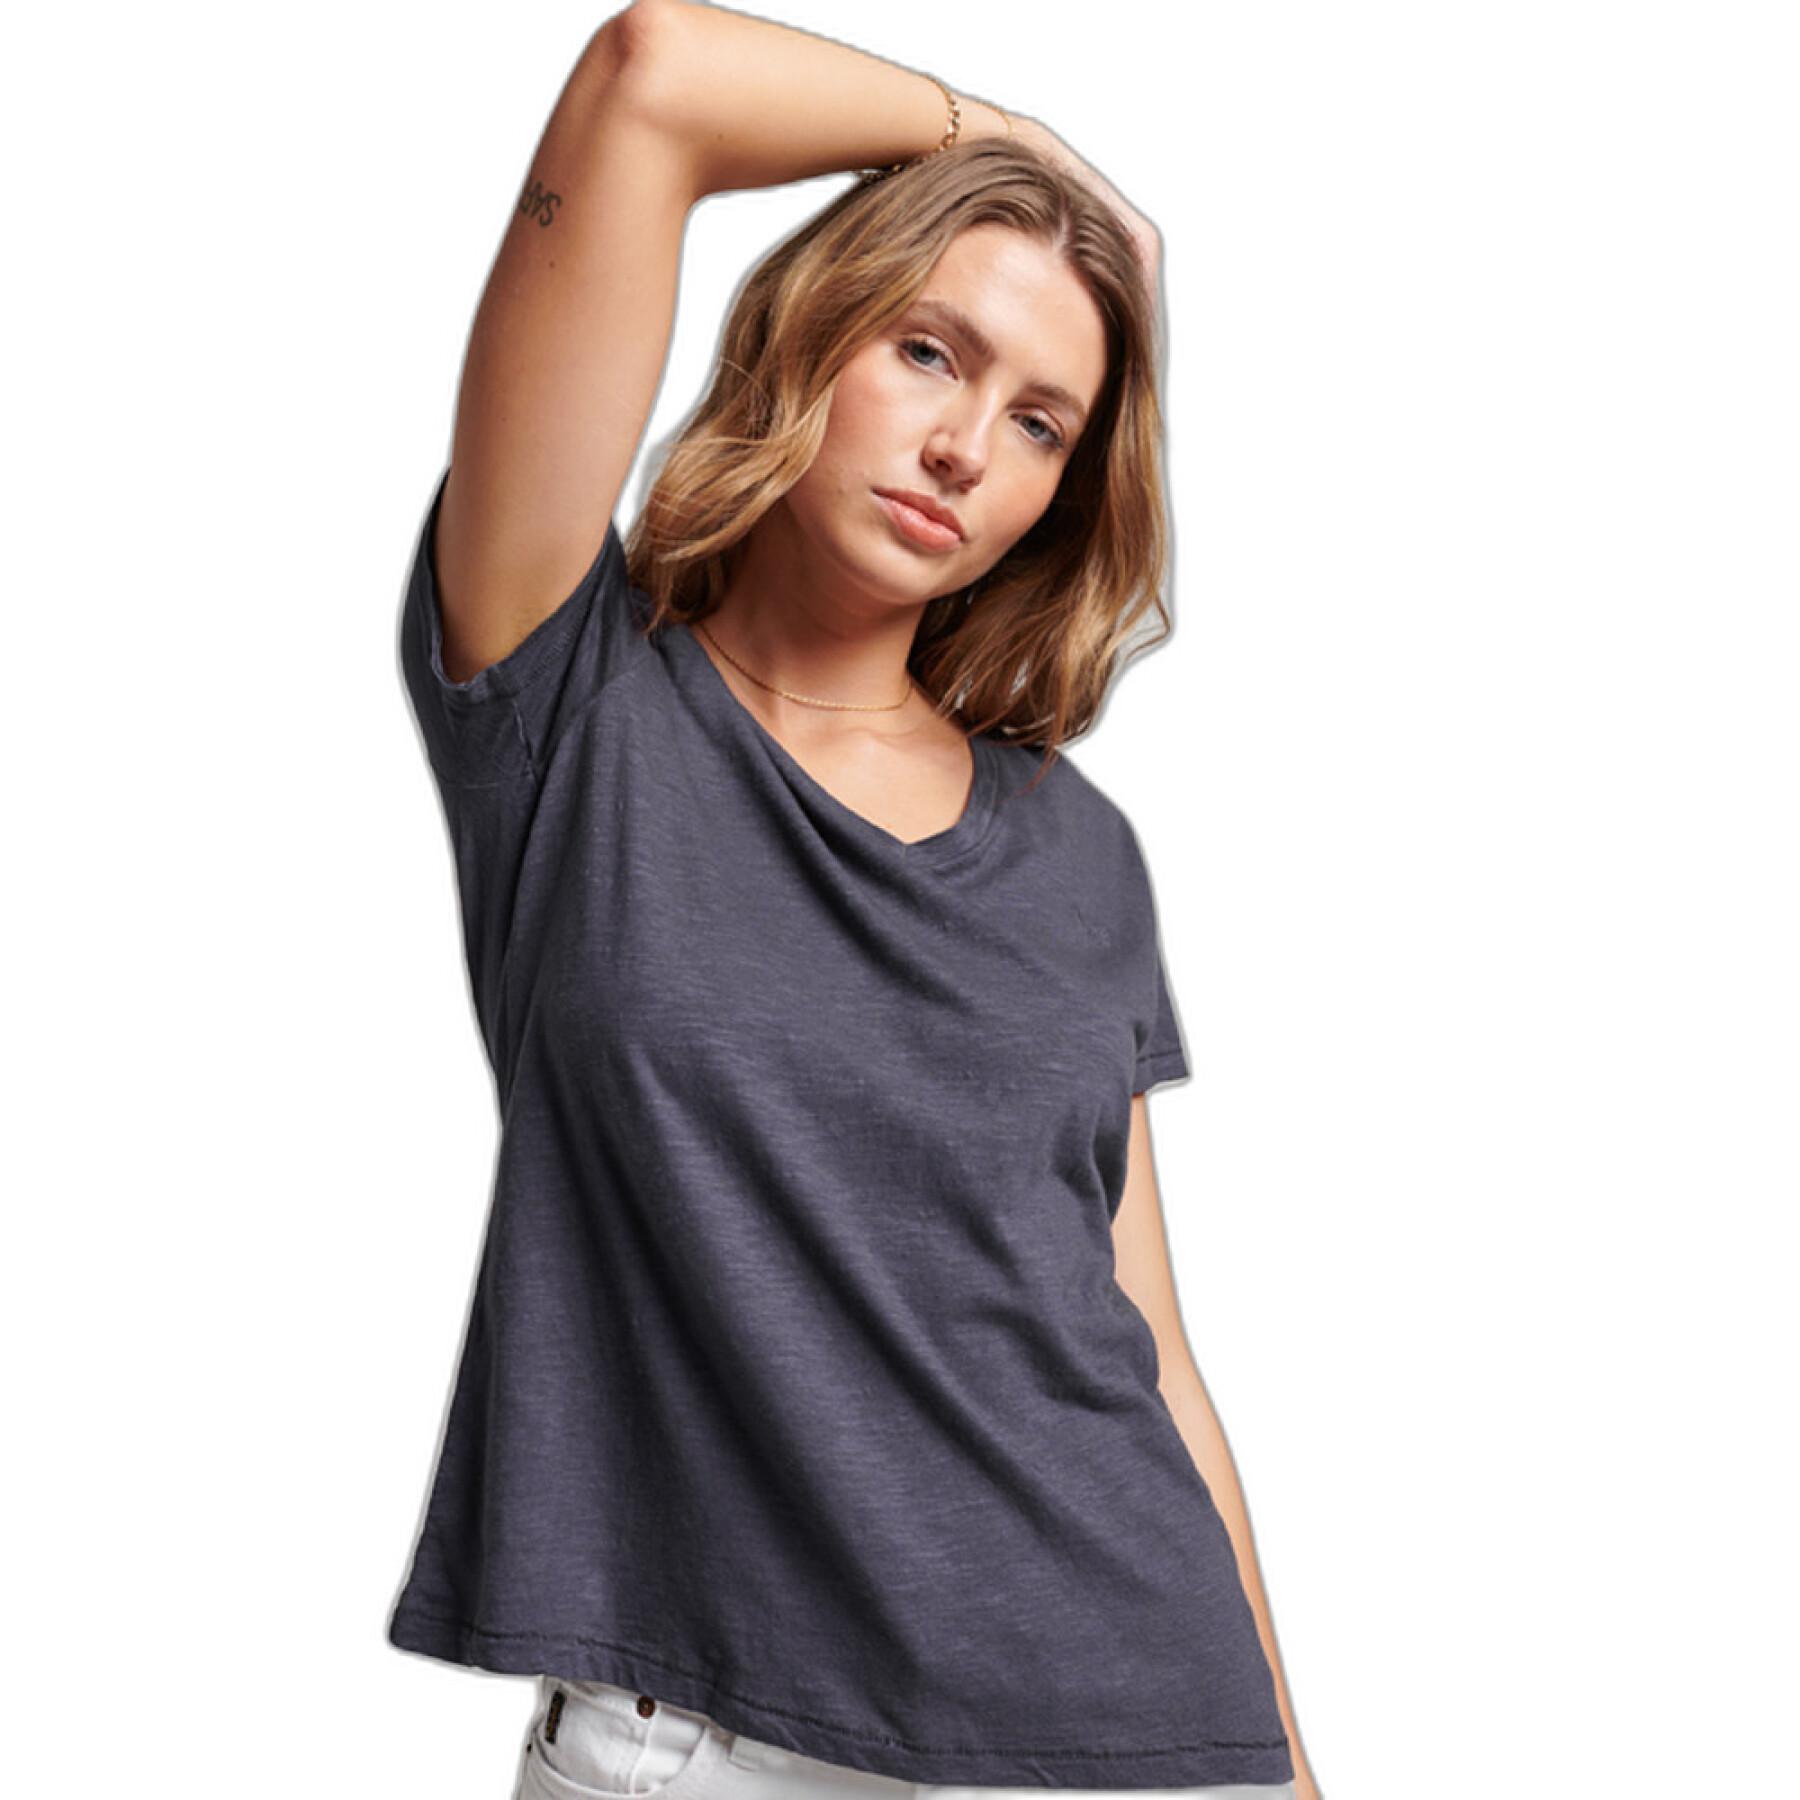 T-shirt de rapariga bordada e flamejada com pescoço em v Superdry